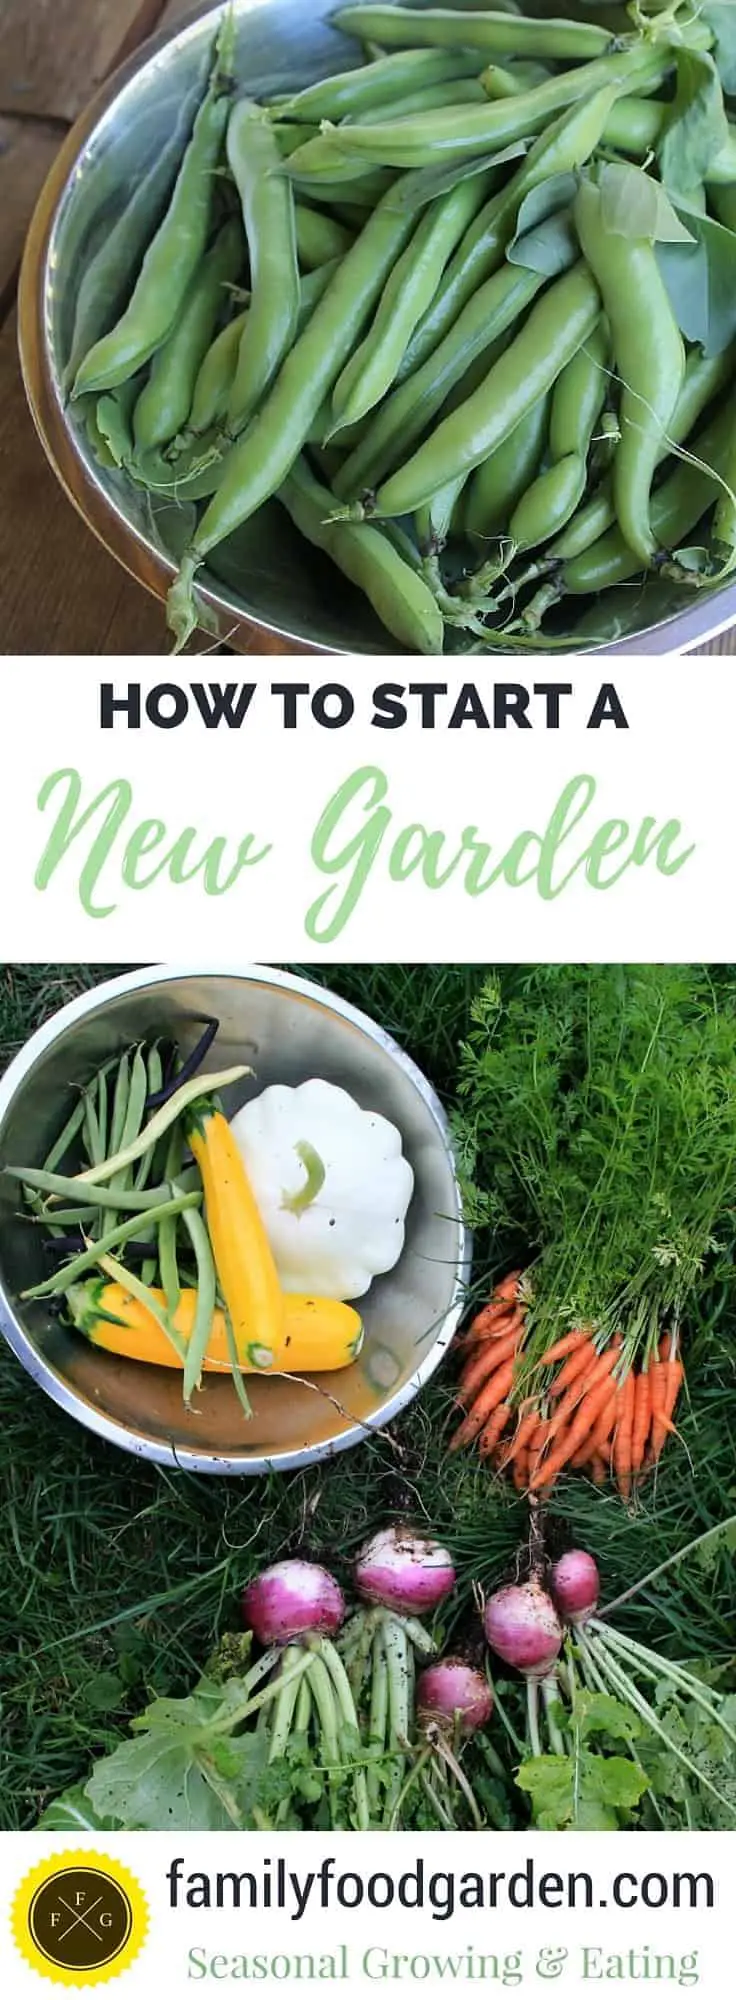 Plan & Design your first garden!